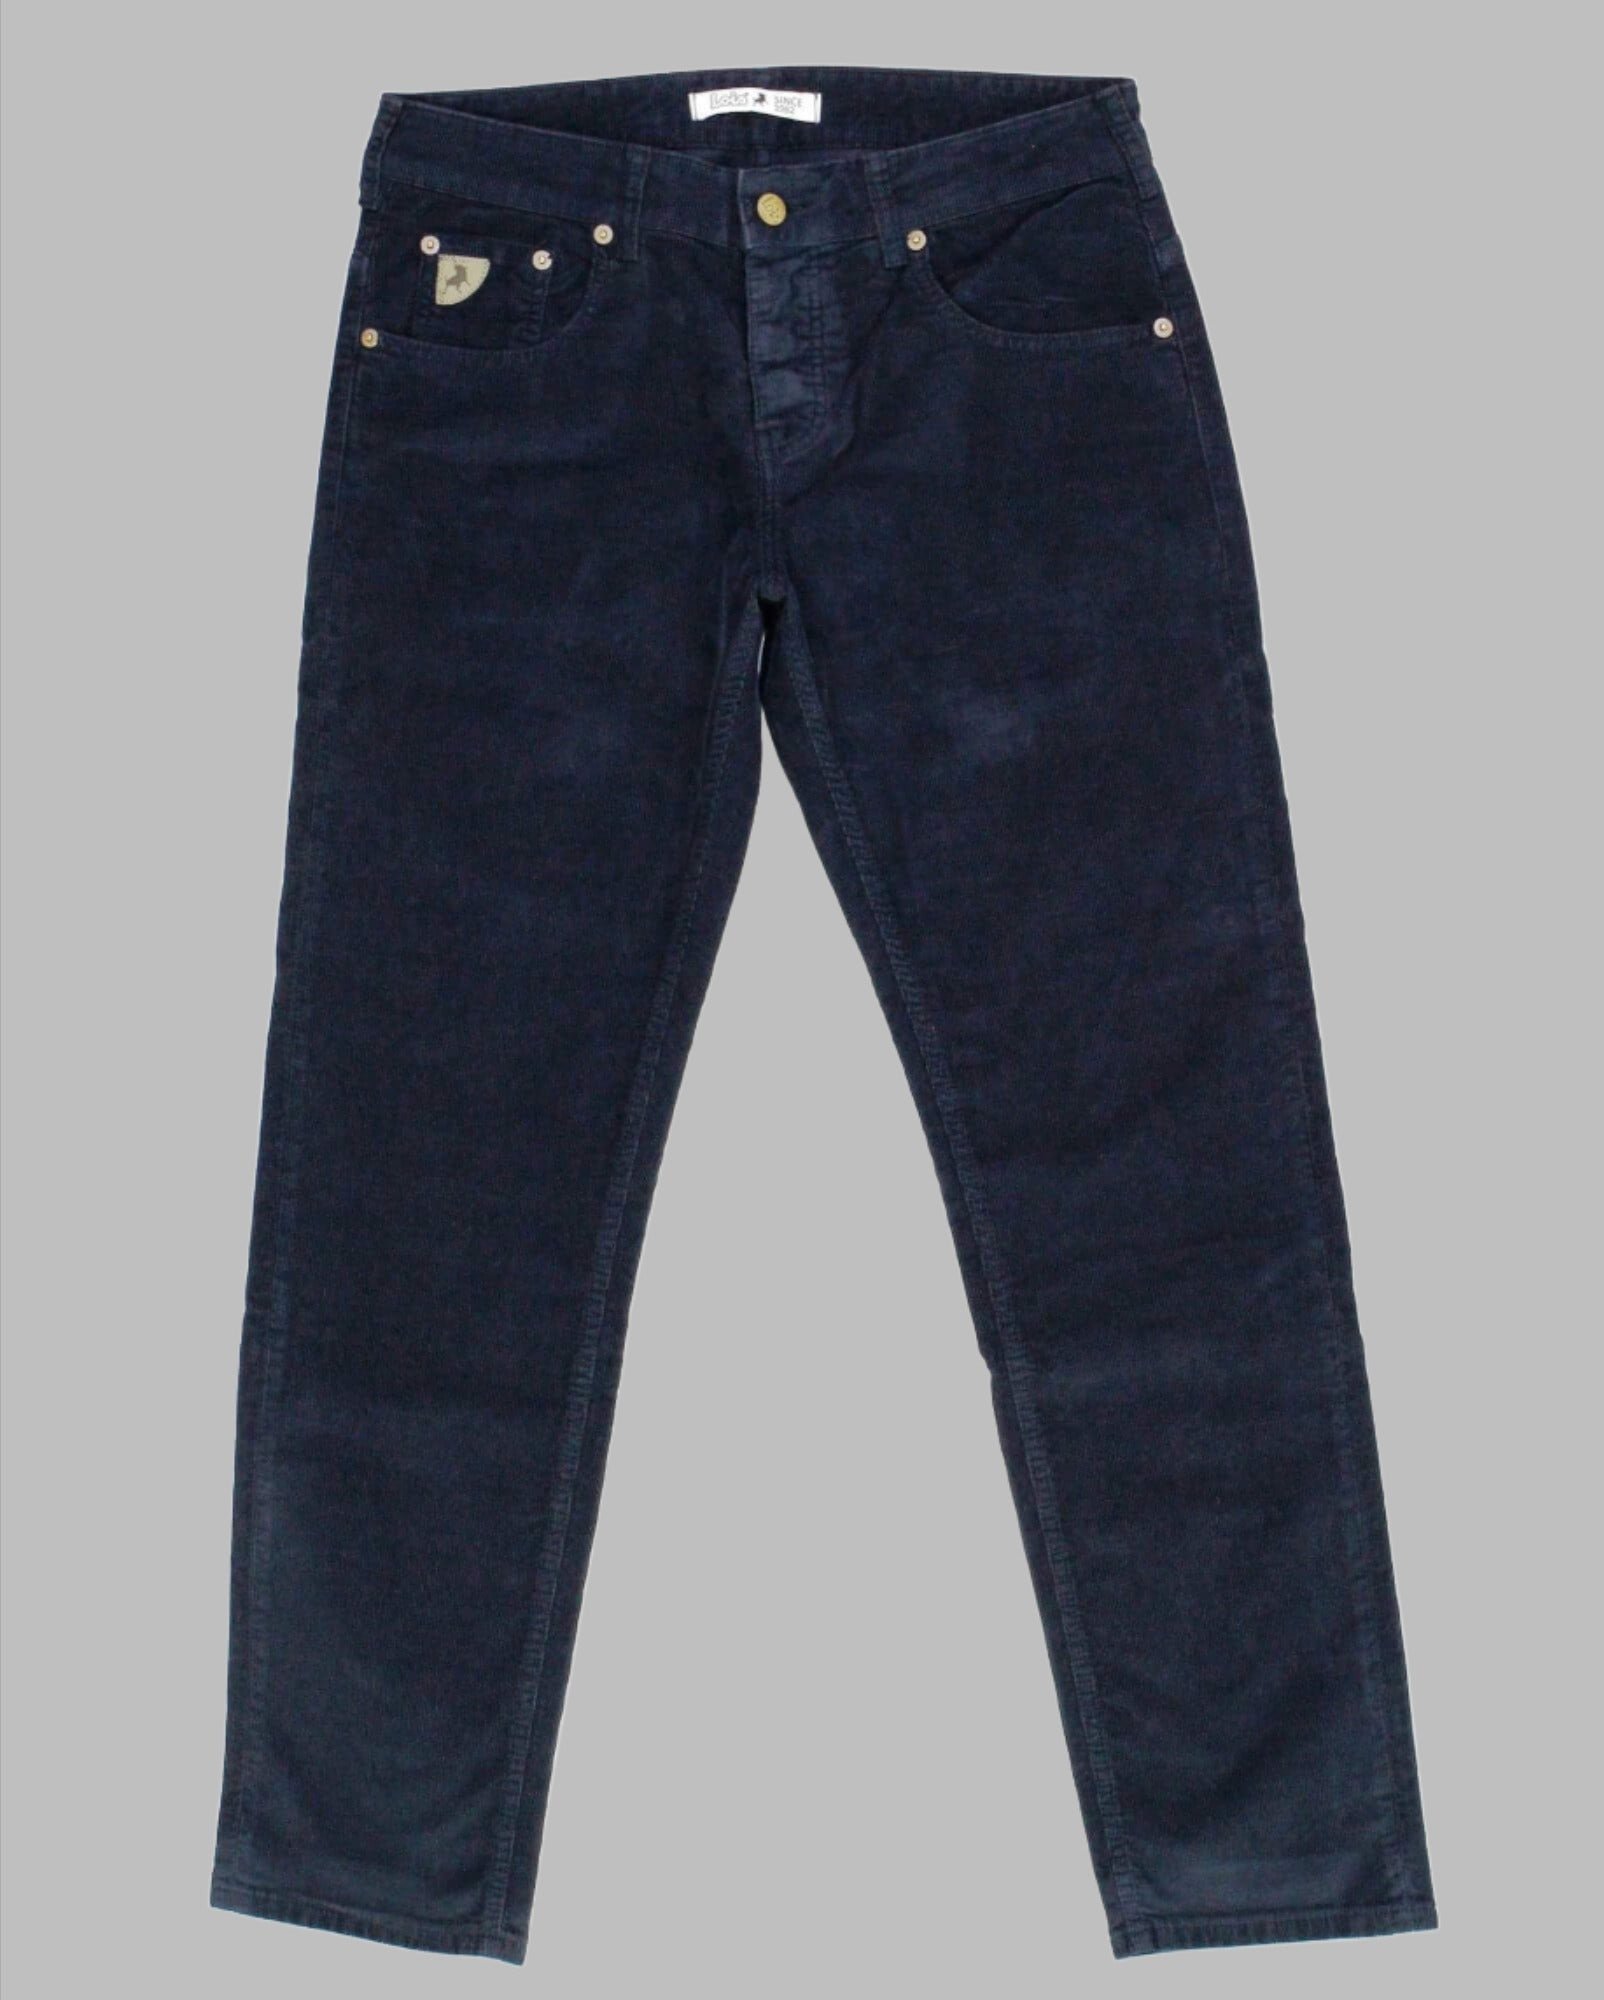 Lois Jeans SIERRA Needle Cord Jeans in Navy – Indi Menswear